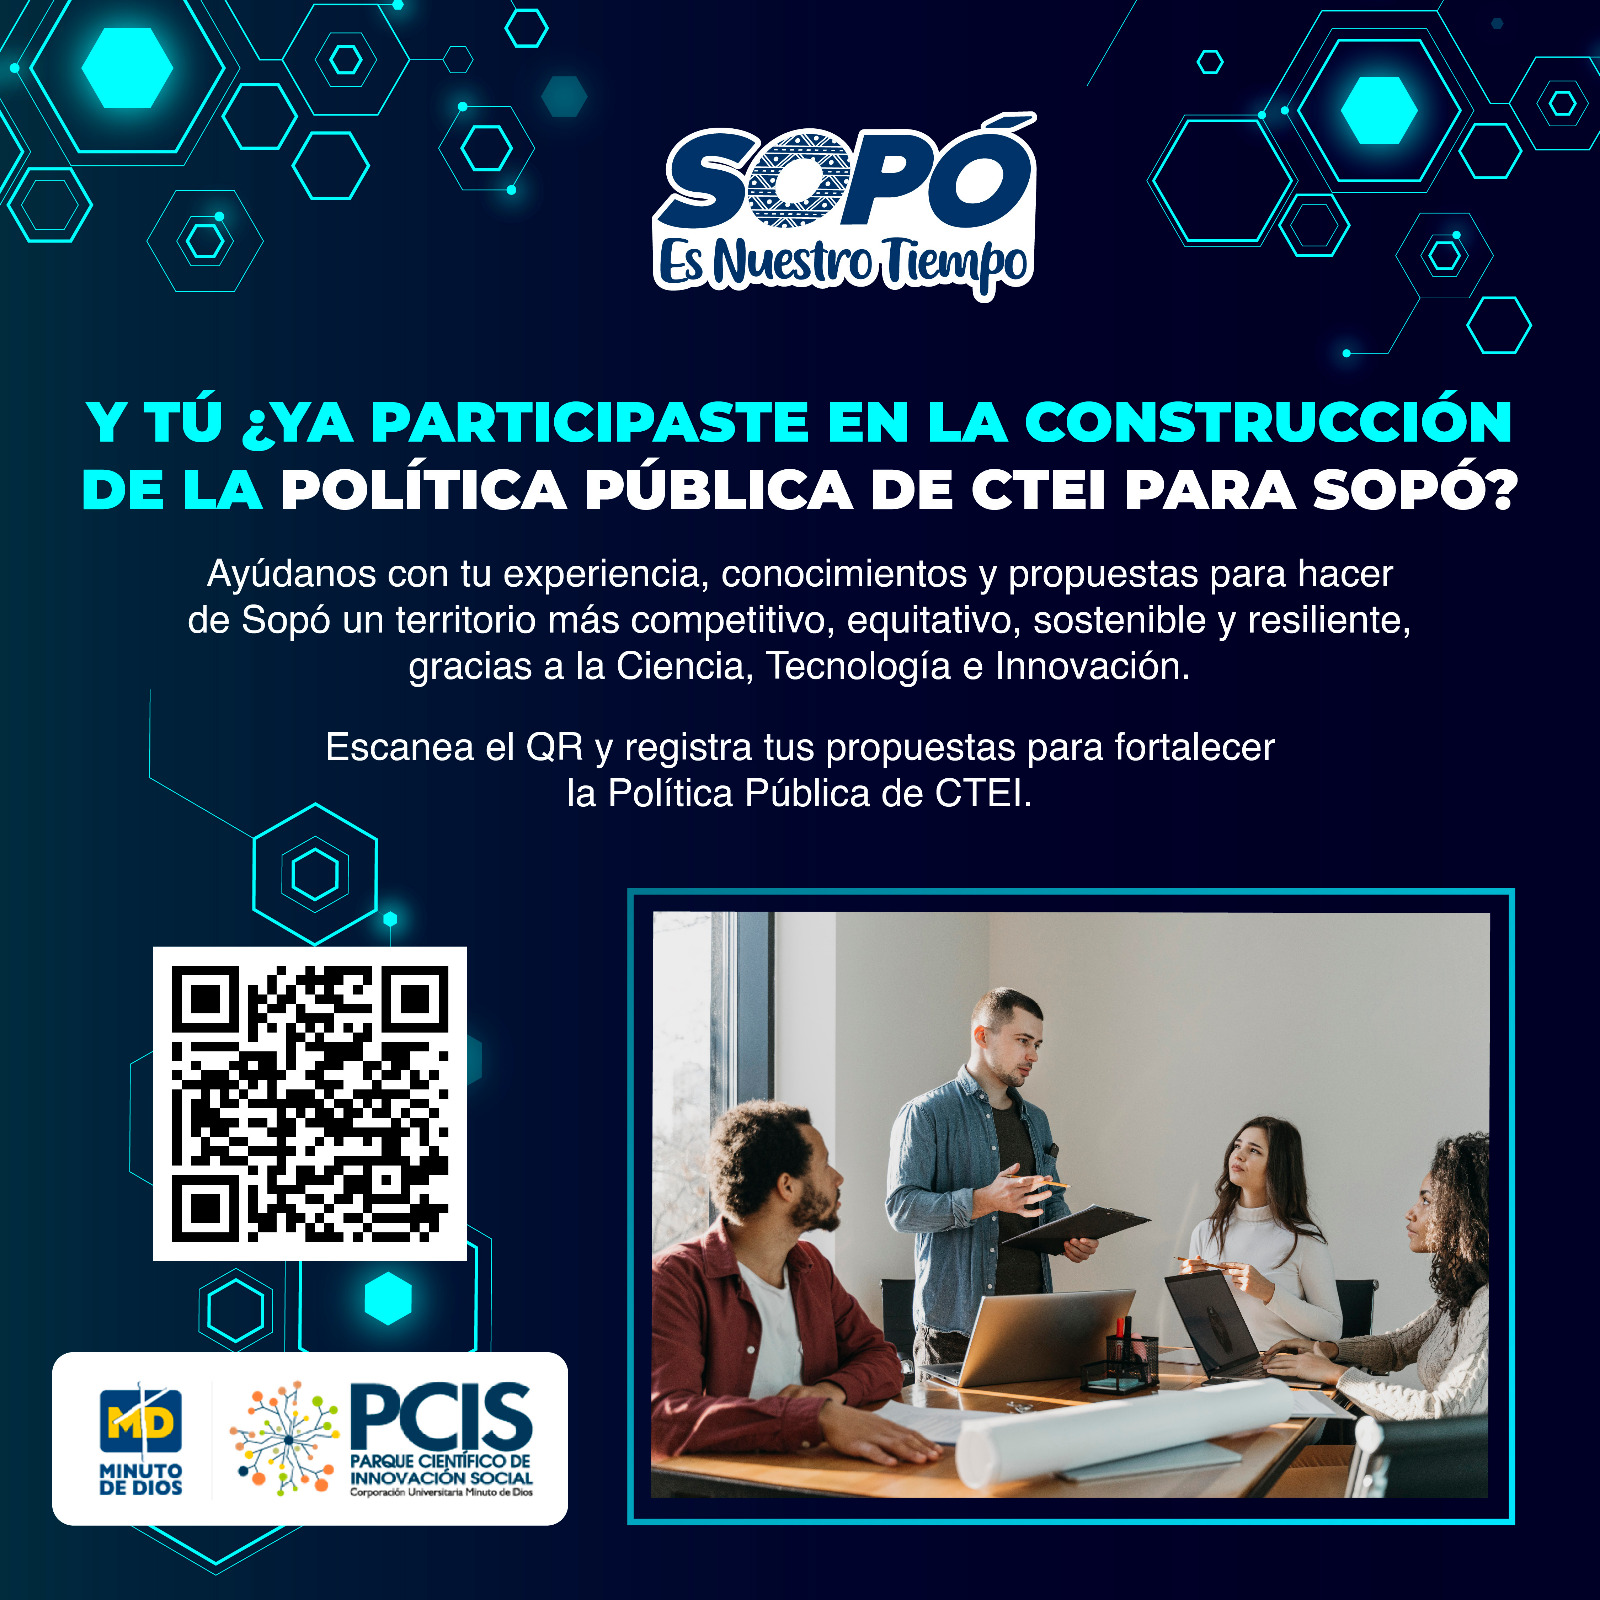 Participa en la construcción de la Política Pública de CTEI de Sopó